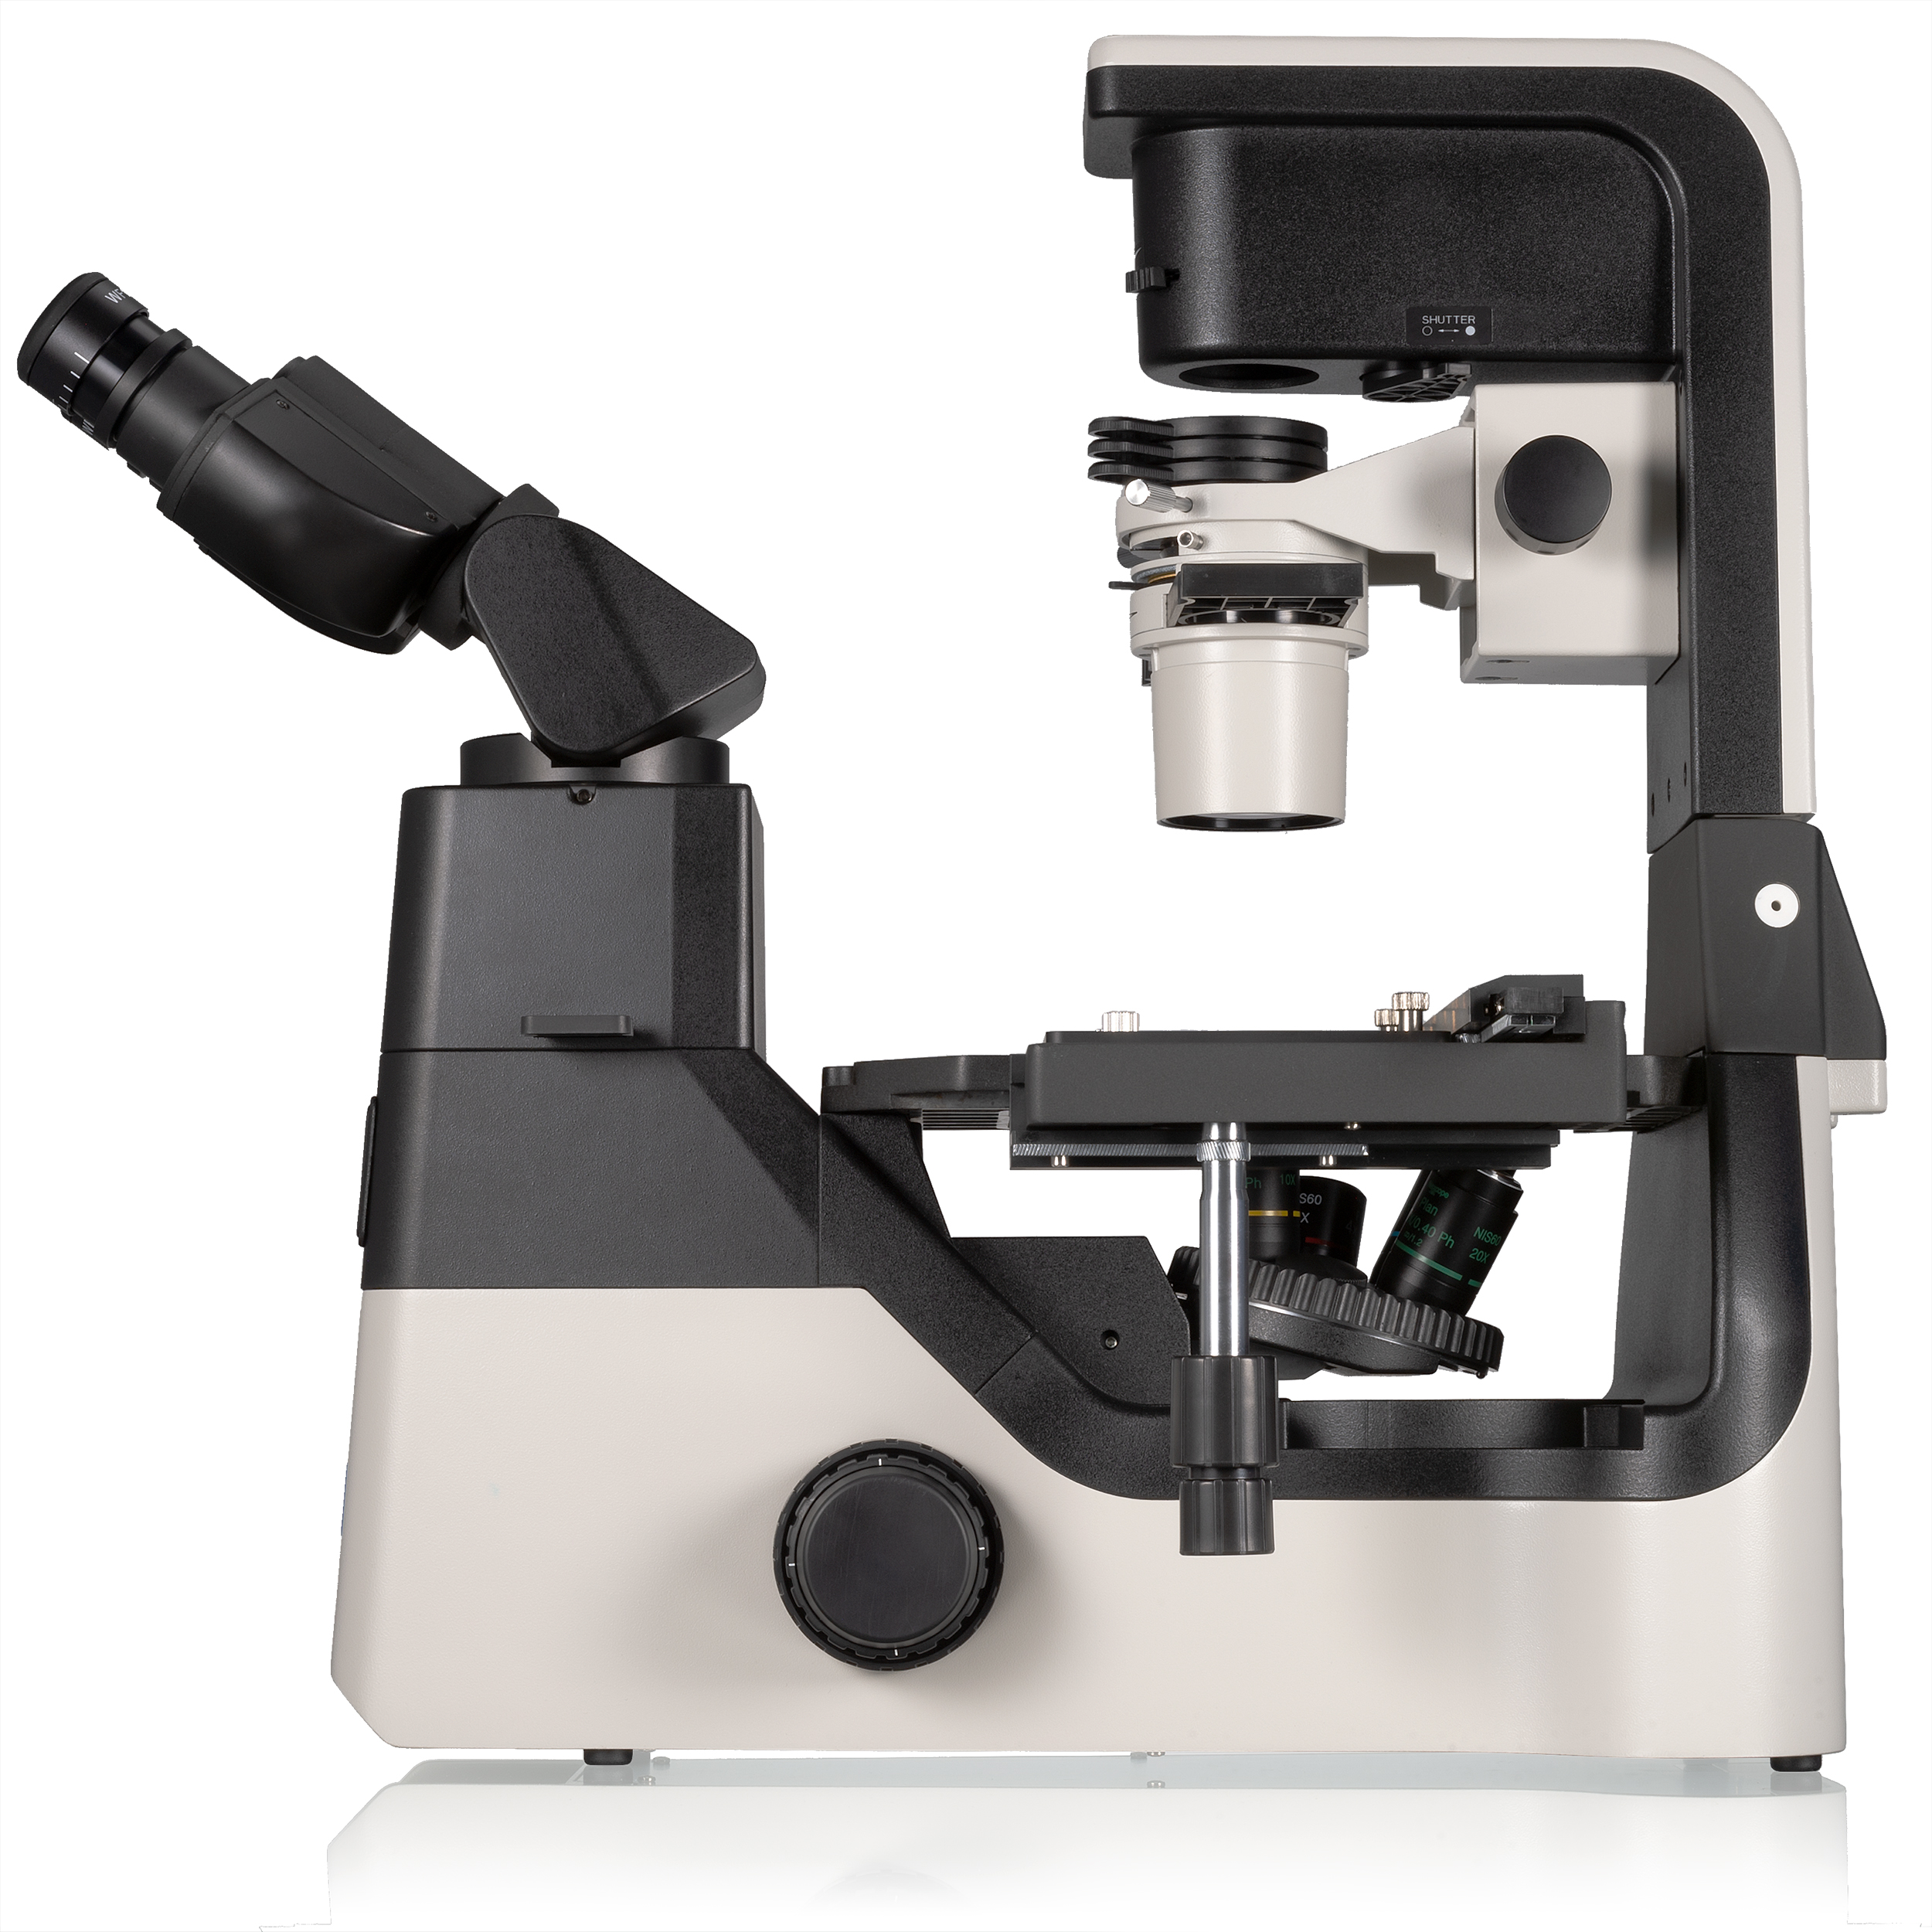 Nexcope NIB630 microscopio inverso de investigación con unidad de iluminación inclinable